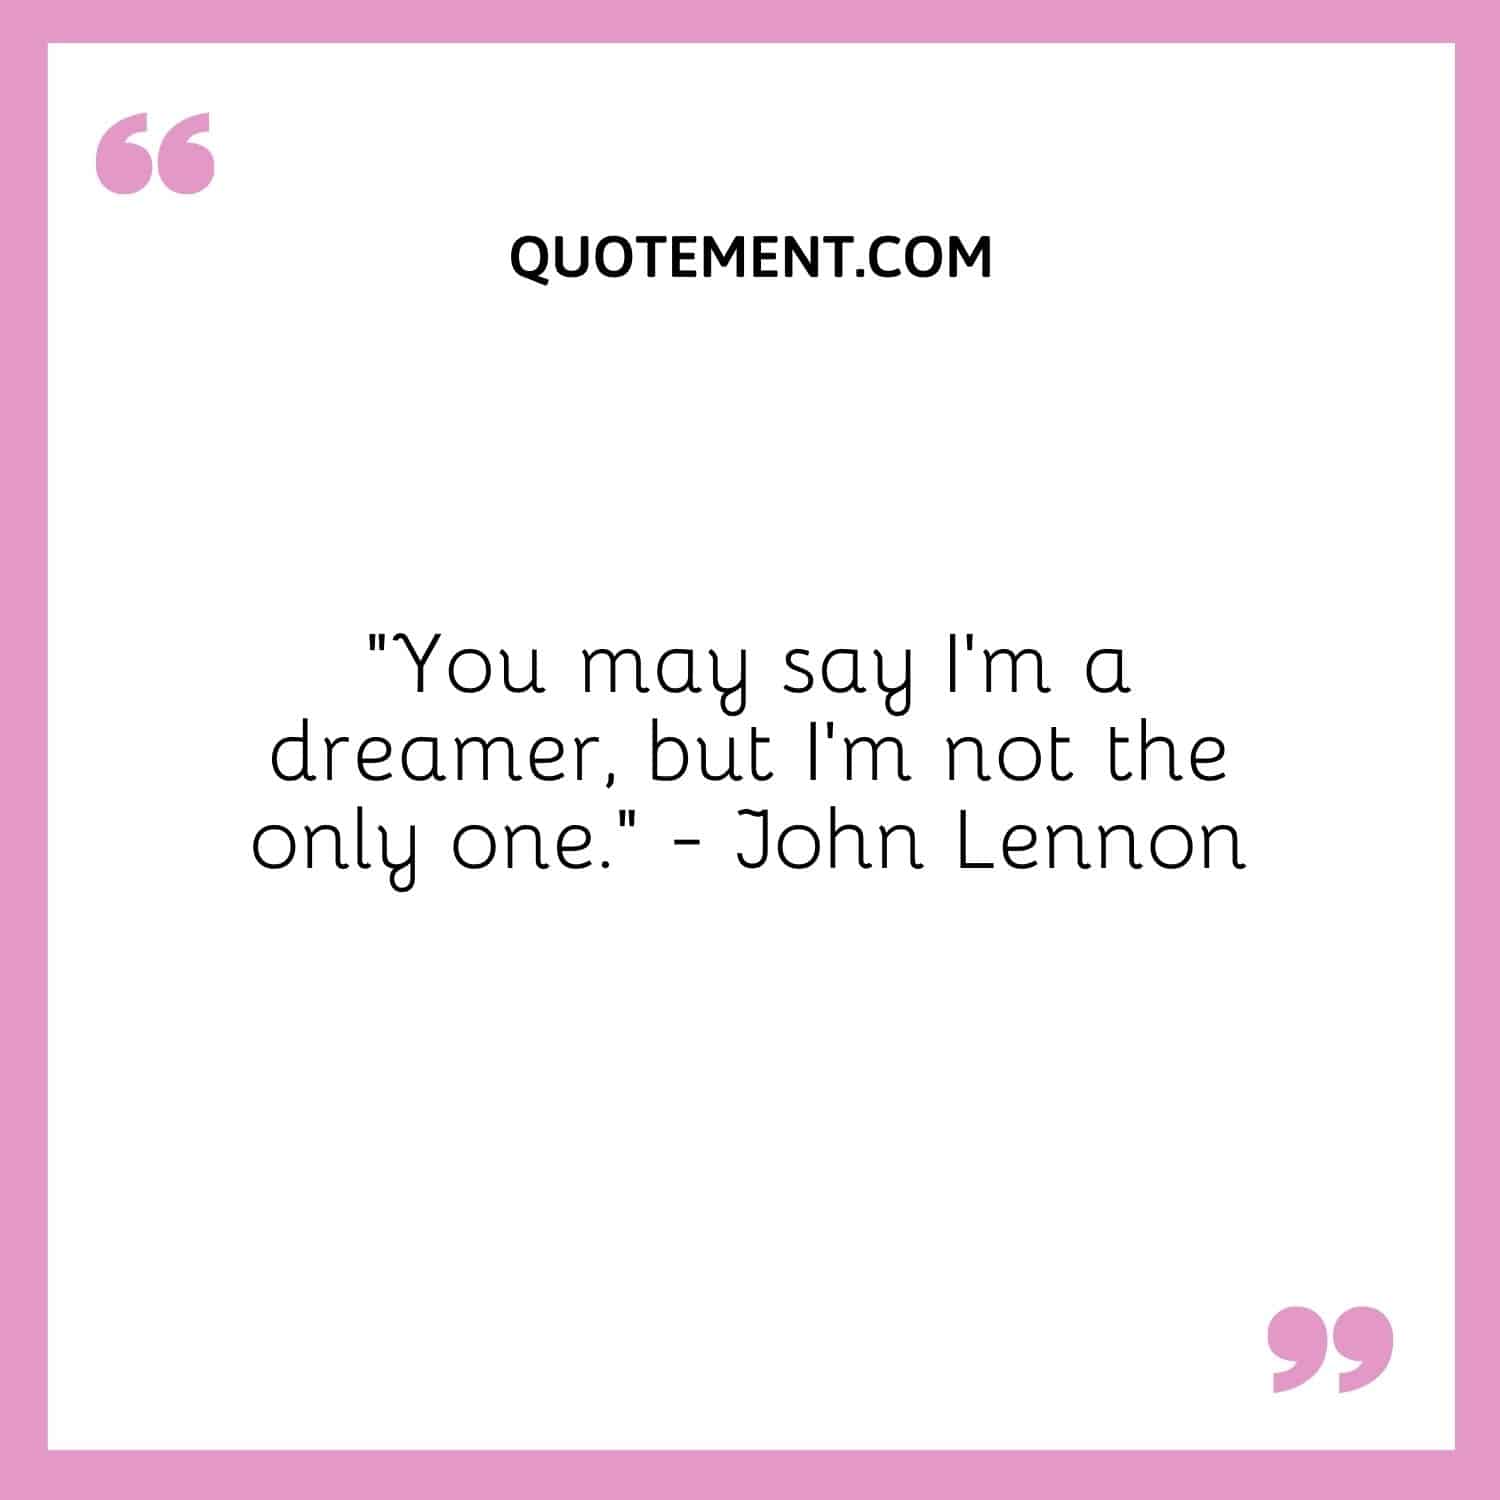 “You may say I’m a dreamer, but I’m not the only one.” — John Lennon